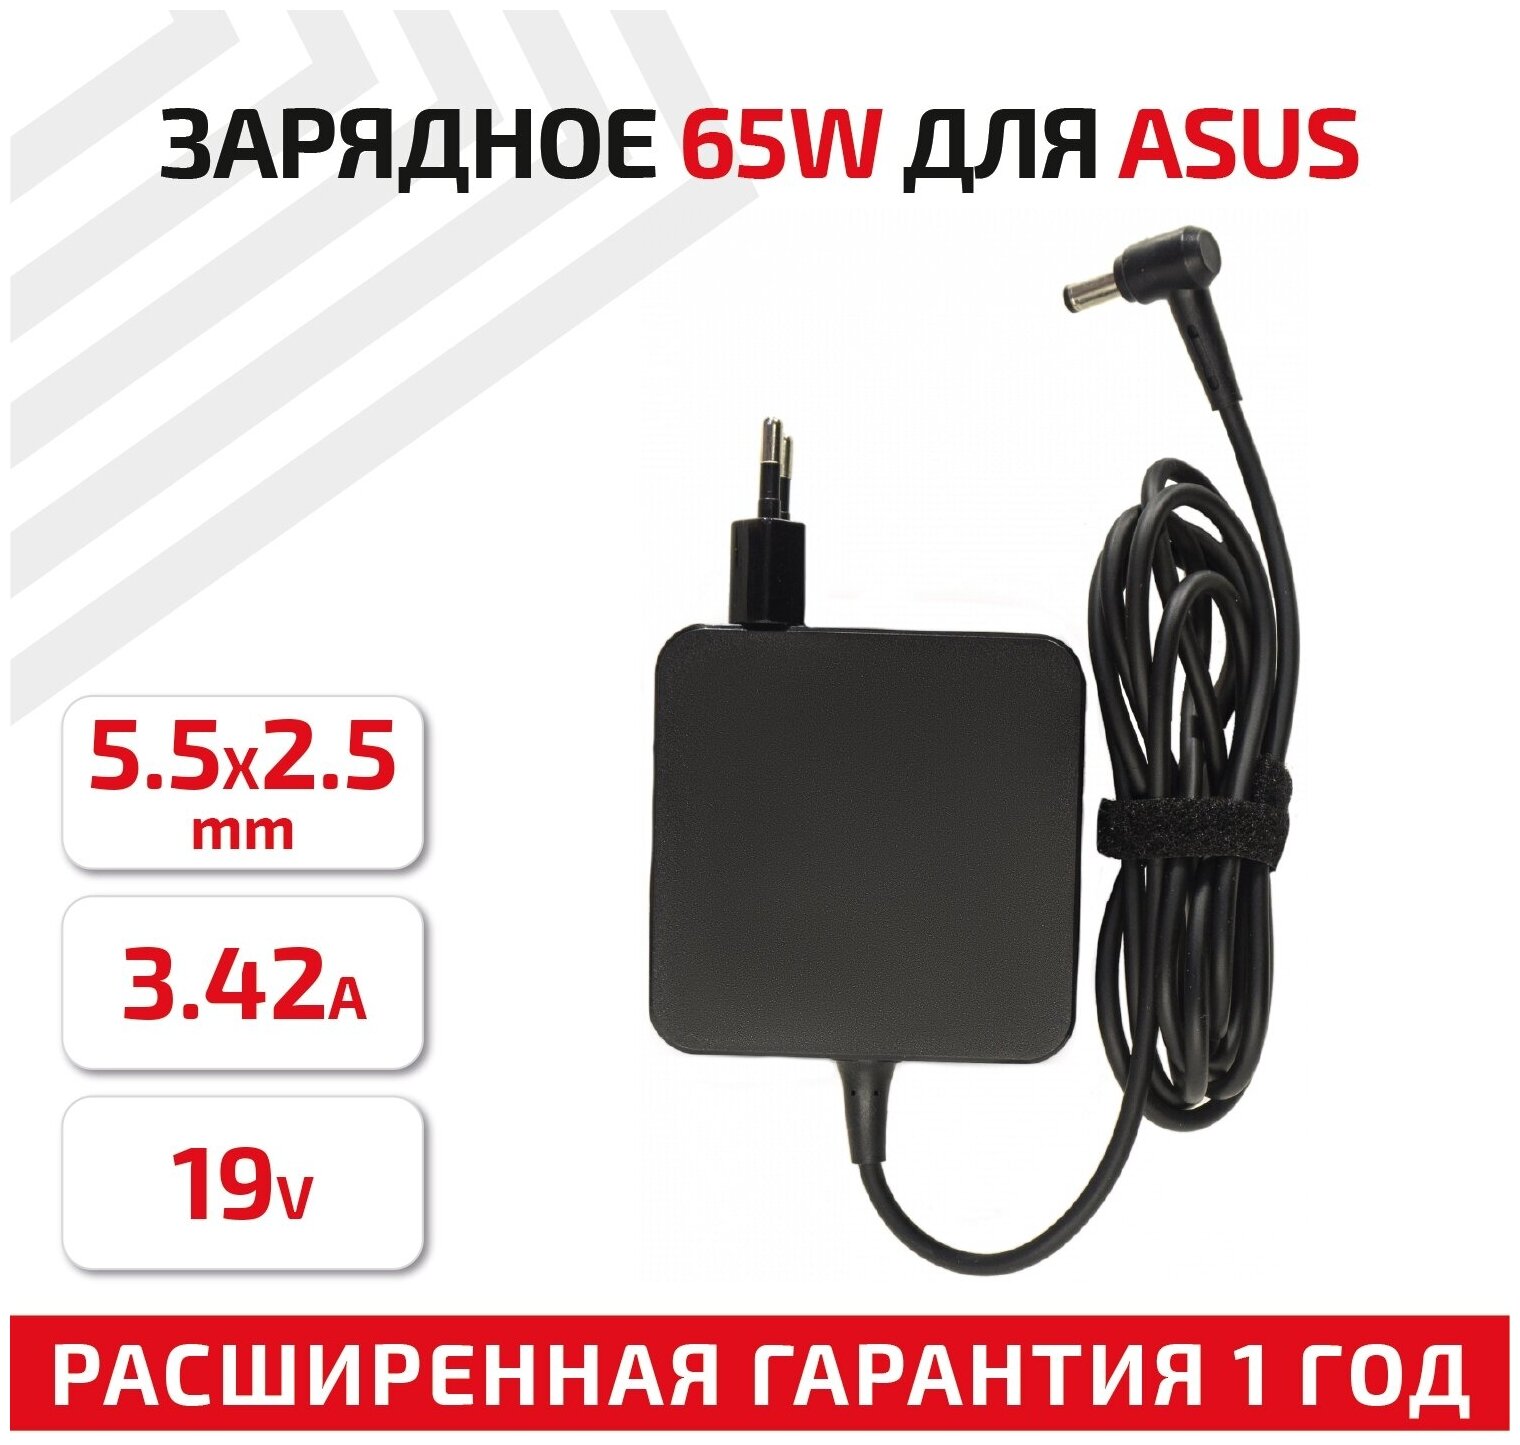 Зарядное устройство (блок питания/зарядка) для ноутбука Asus K50 K53 K55 K56 K72 K73 X550 19В 3.42А 5.5x2.5мм квадрат